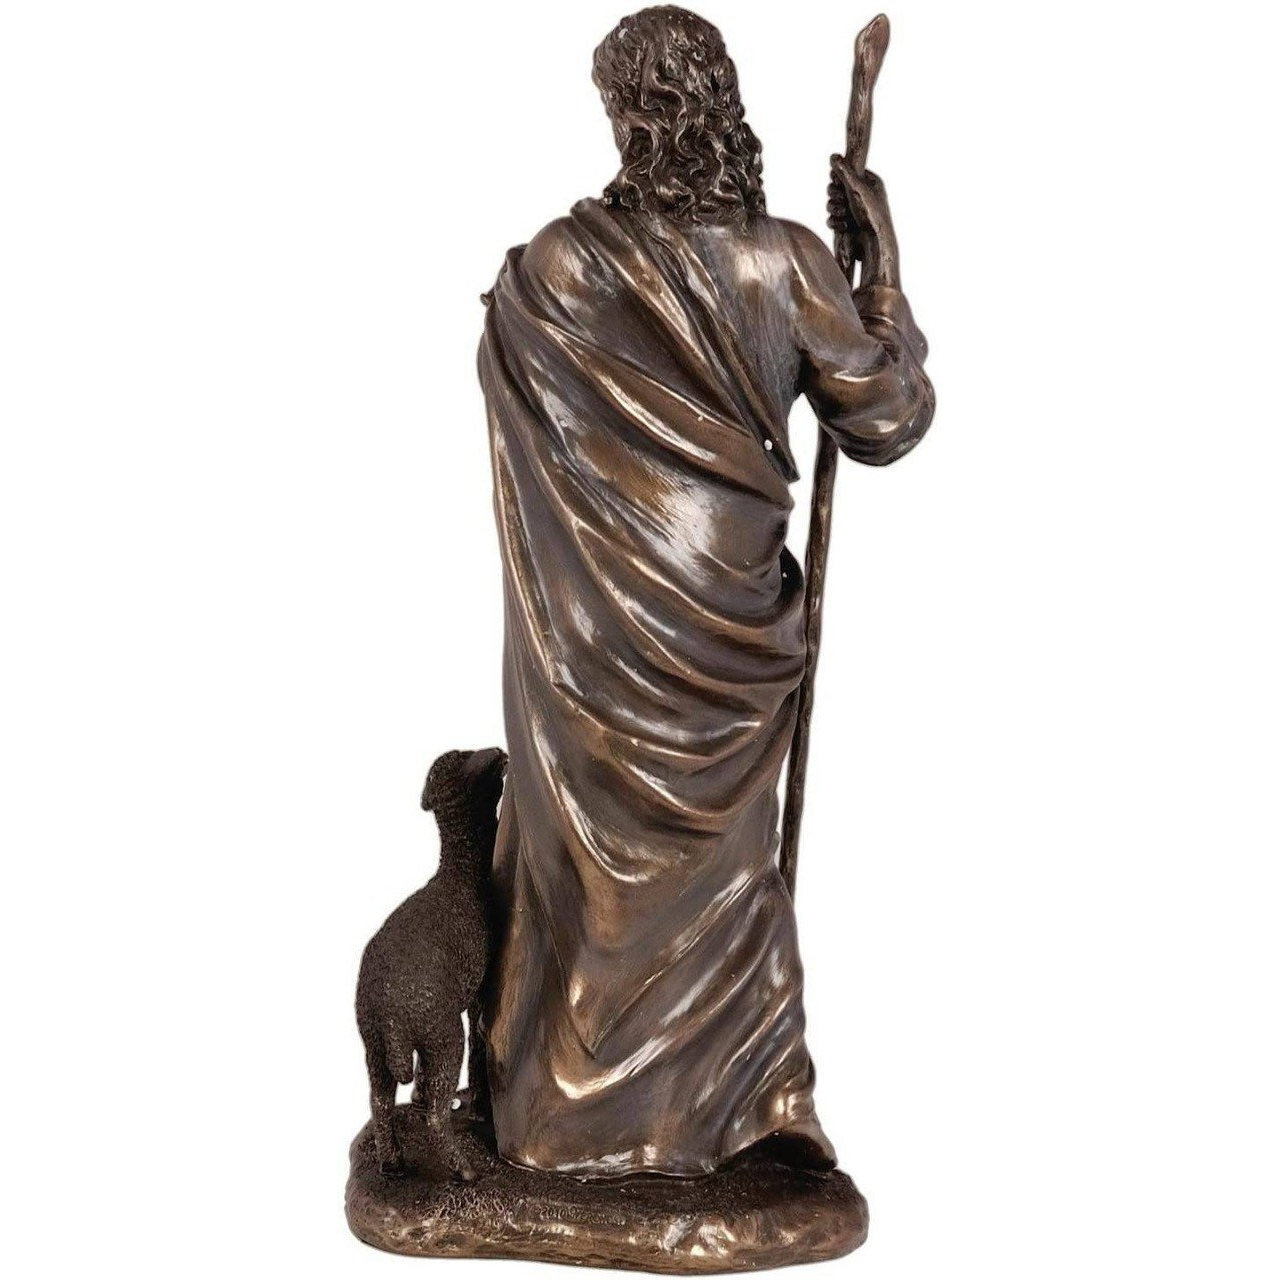 Good Shepherd Figurine